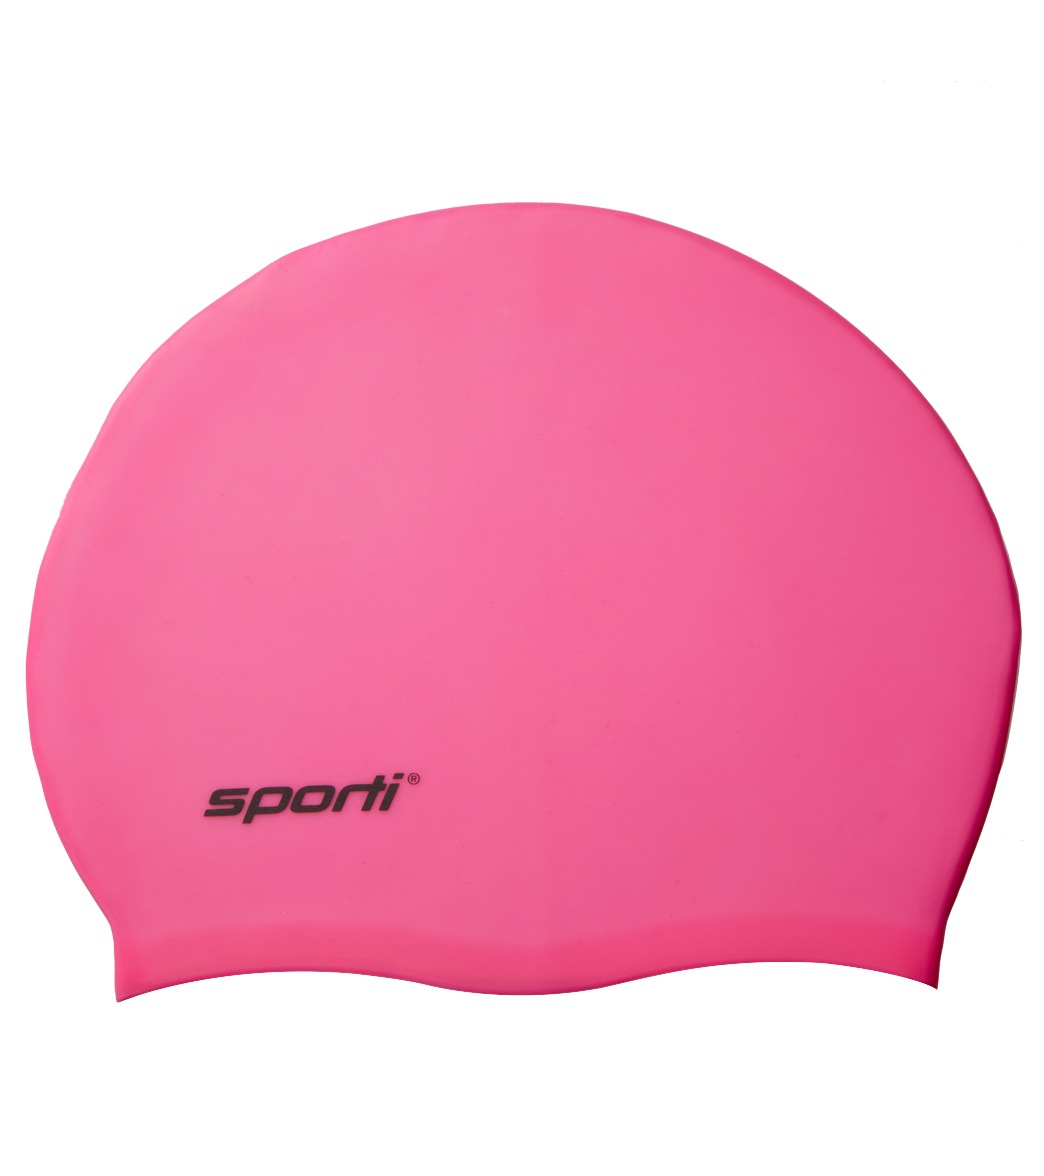 Sporti Kids' Solid Neon Silicone Swim Cap at SwimOutlet.com